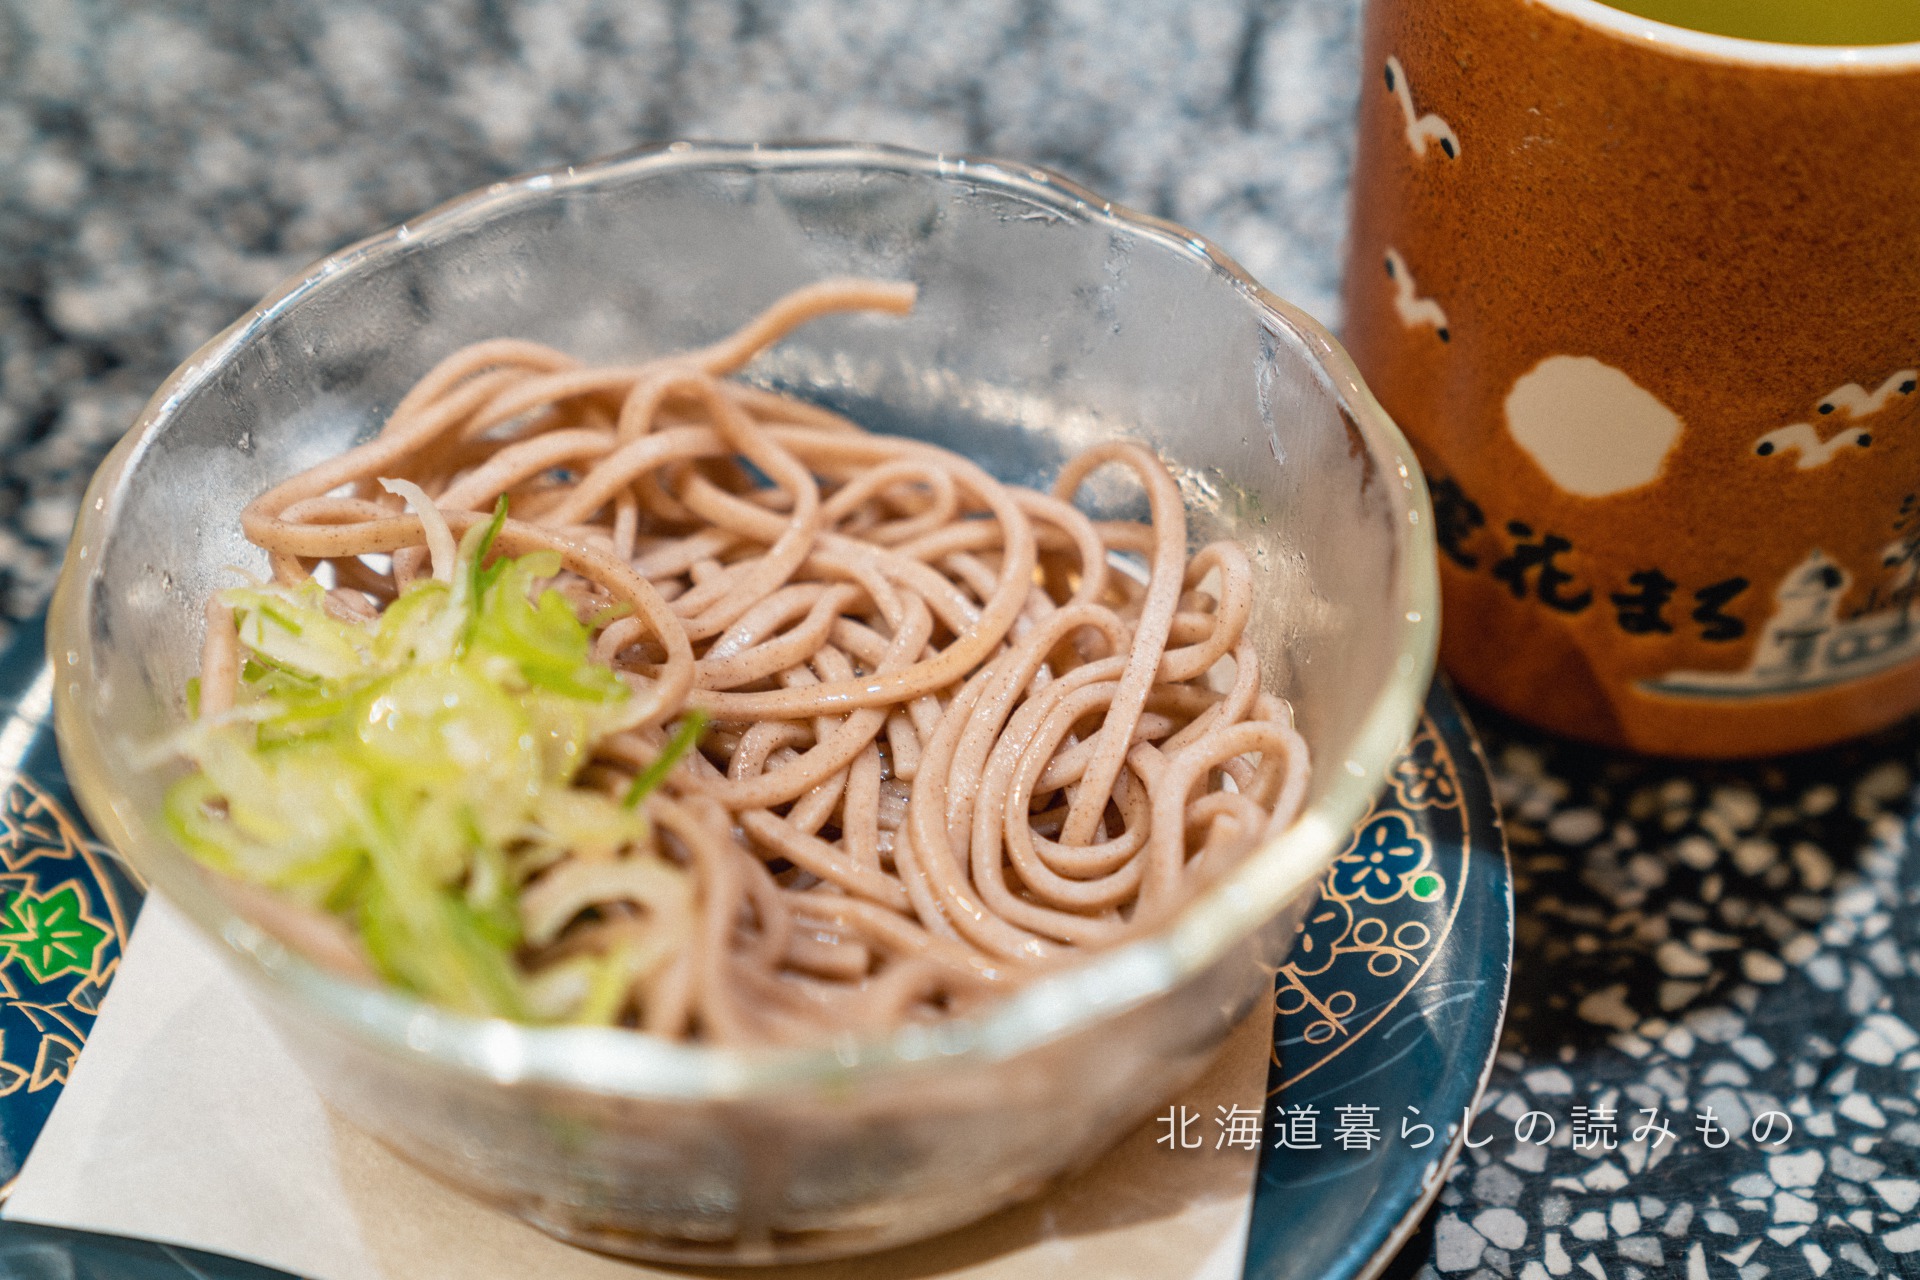 迴轉壽司根室花丸的菜單上的「Small Soba Noodles Bowl / Small Udon Noodles Bowl」